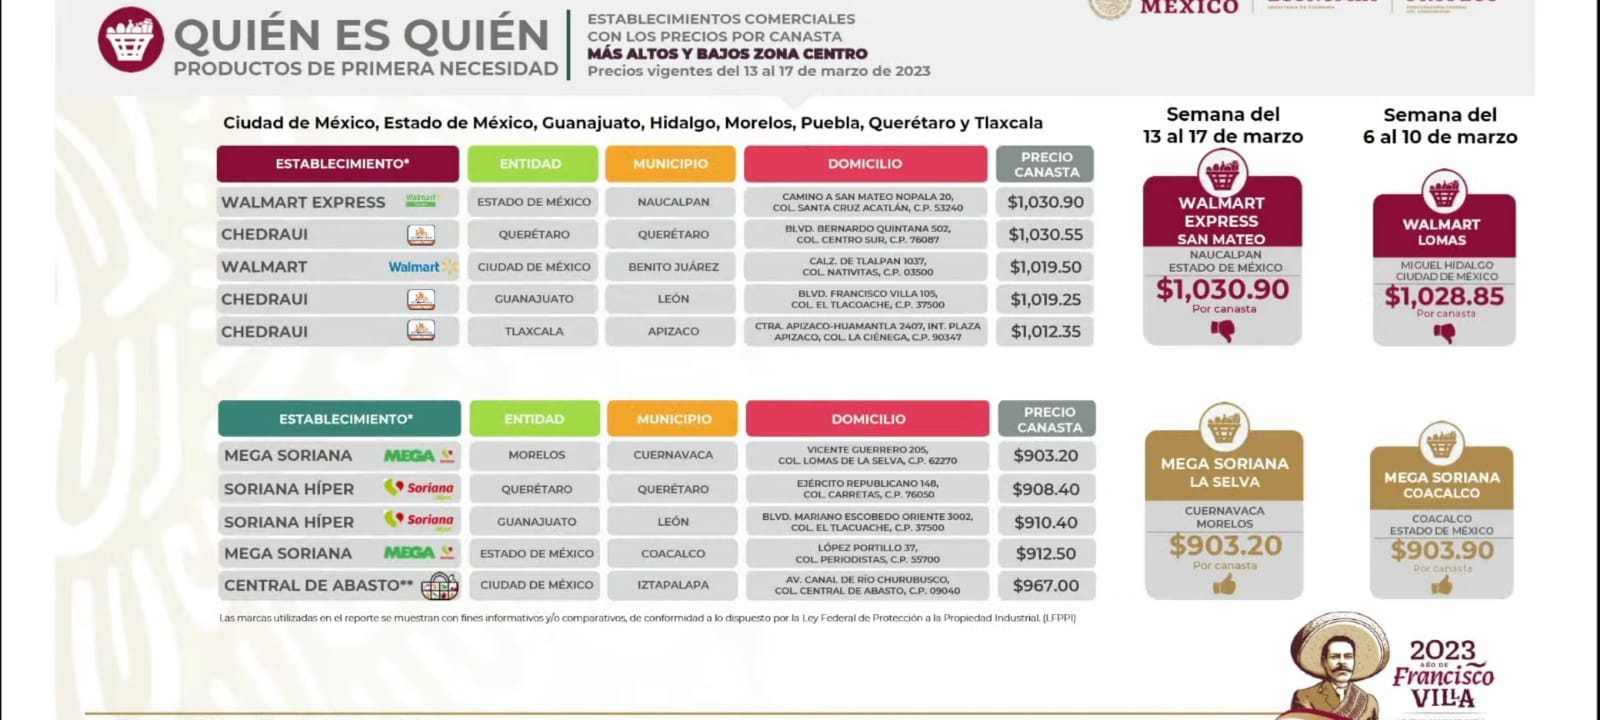 Puebla sin supermercados con buenos precios para la canasta básica: Profeco